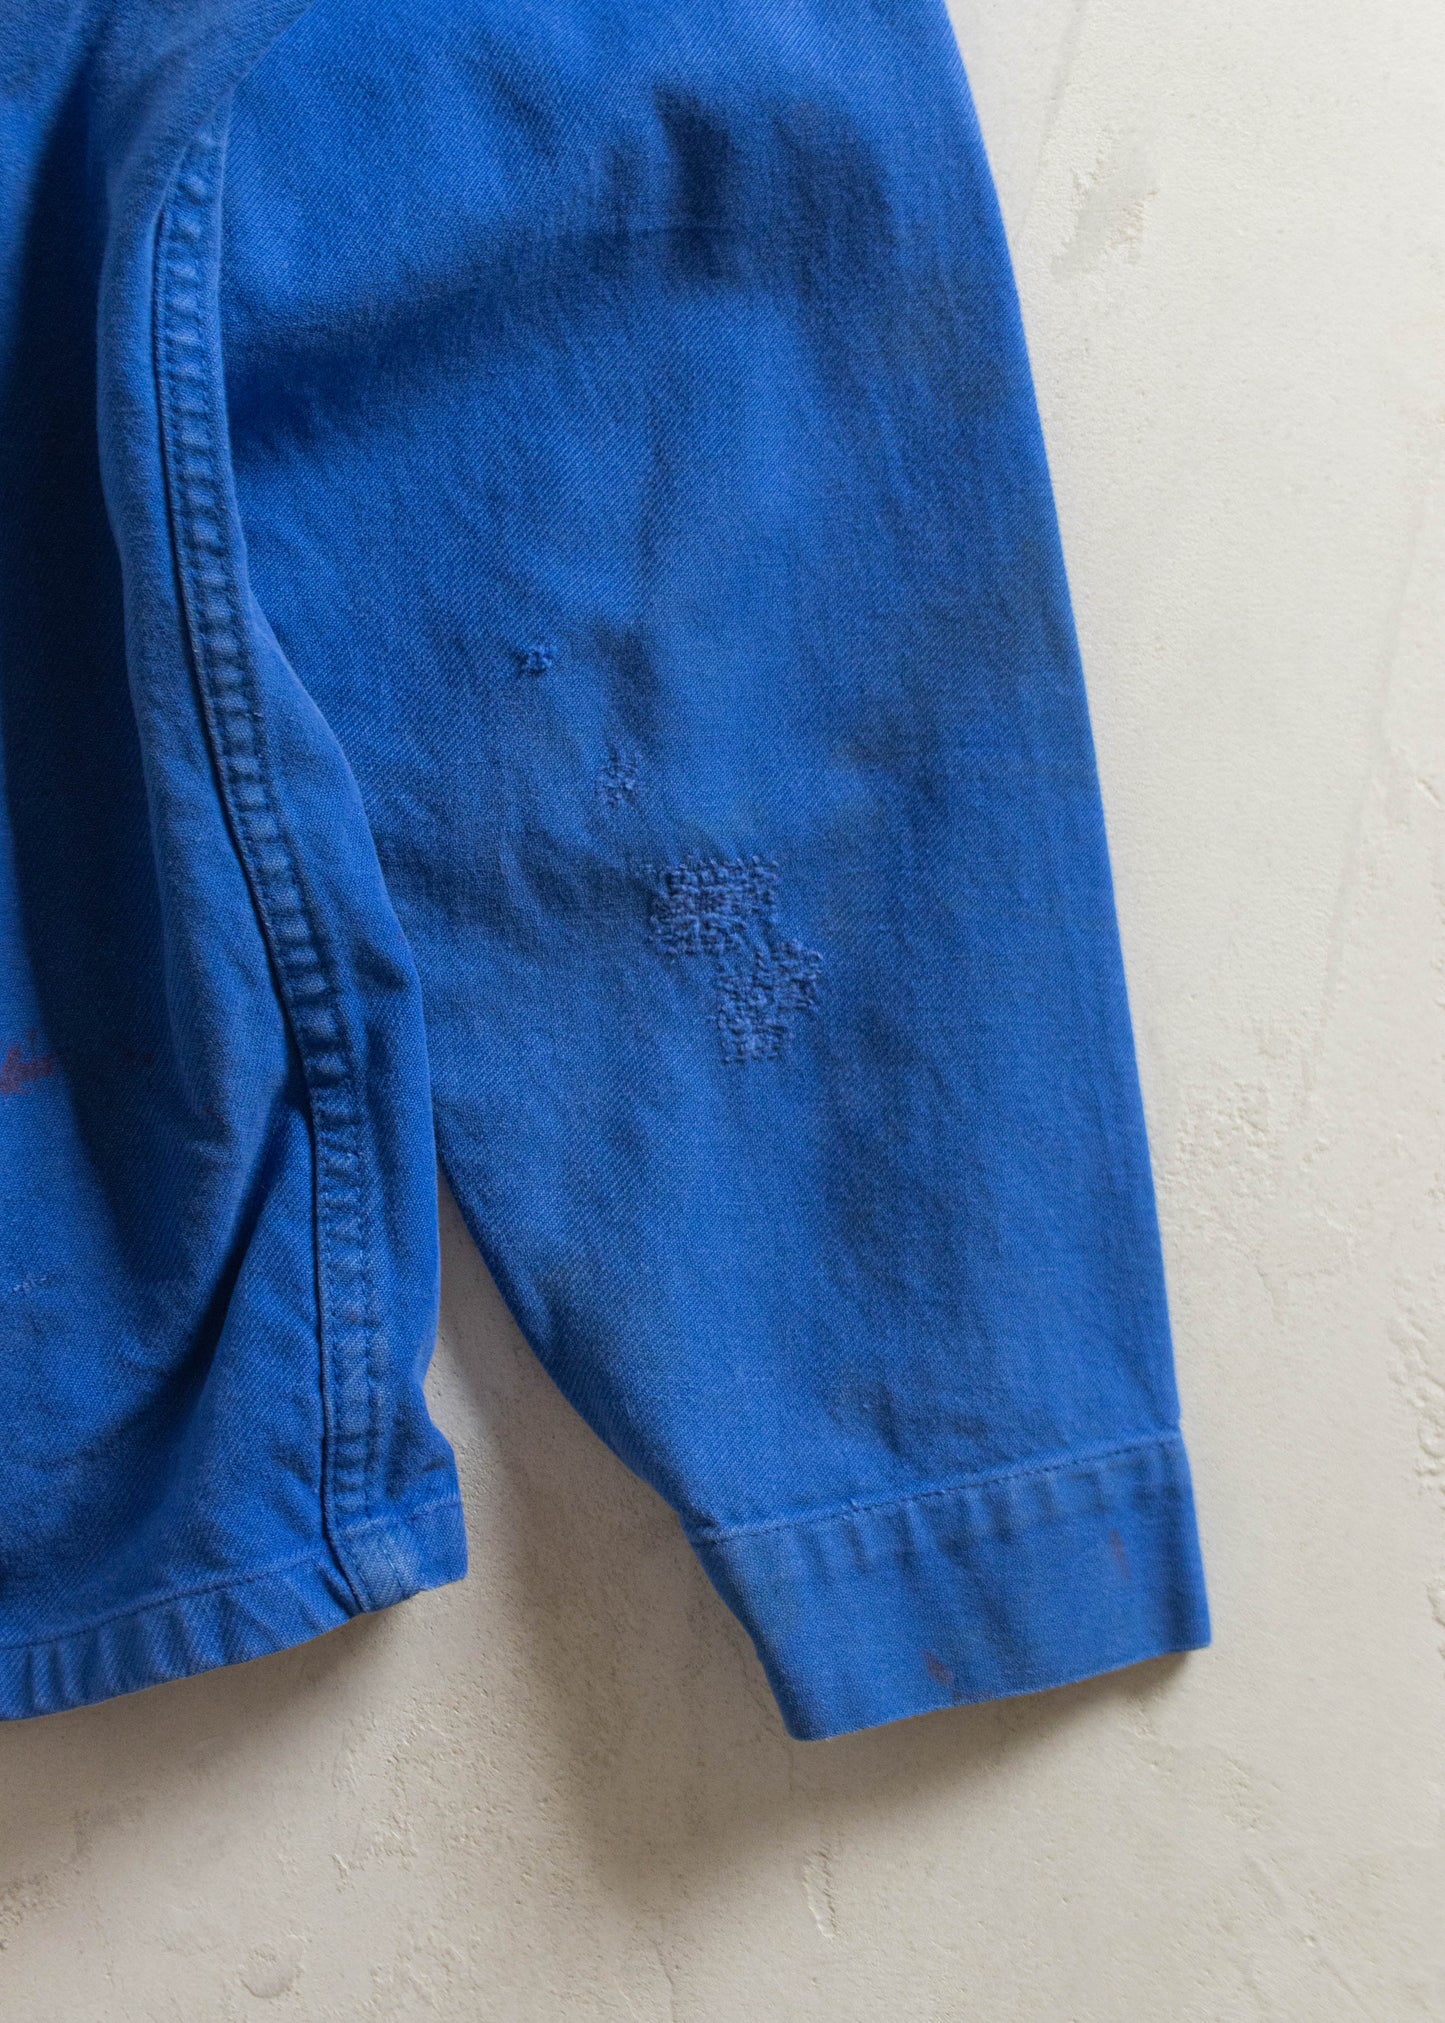 Vintage 1980s Bleu de Travail Workwear Chore Jacket Size M/L